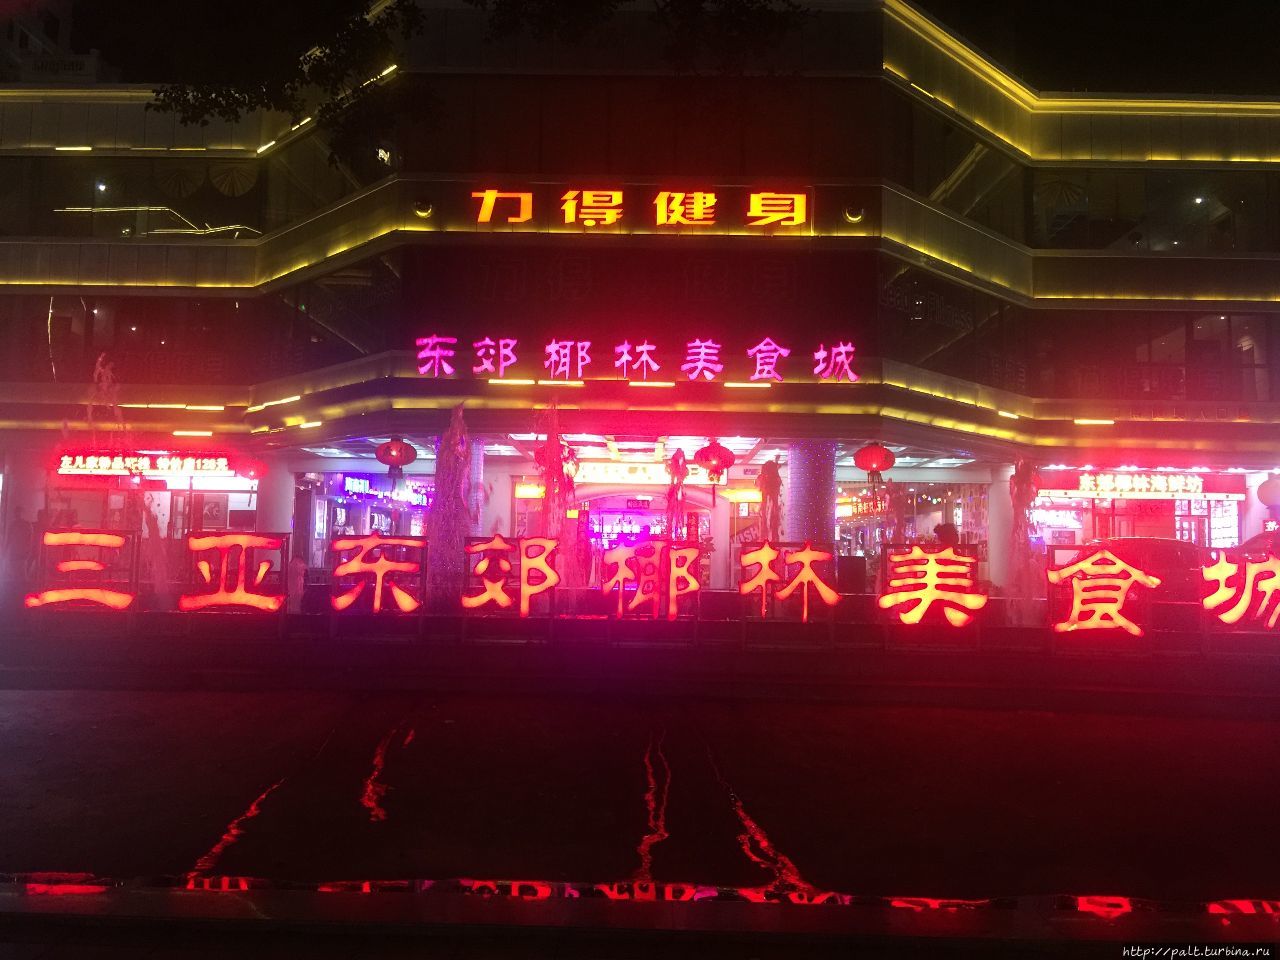 Огни ночной Саньи украсили пешеходный финал нашей поездки Санья, Китай